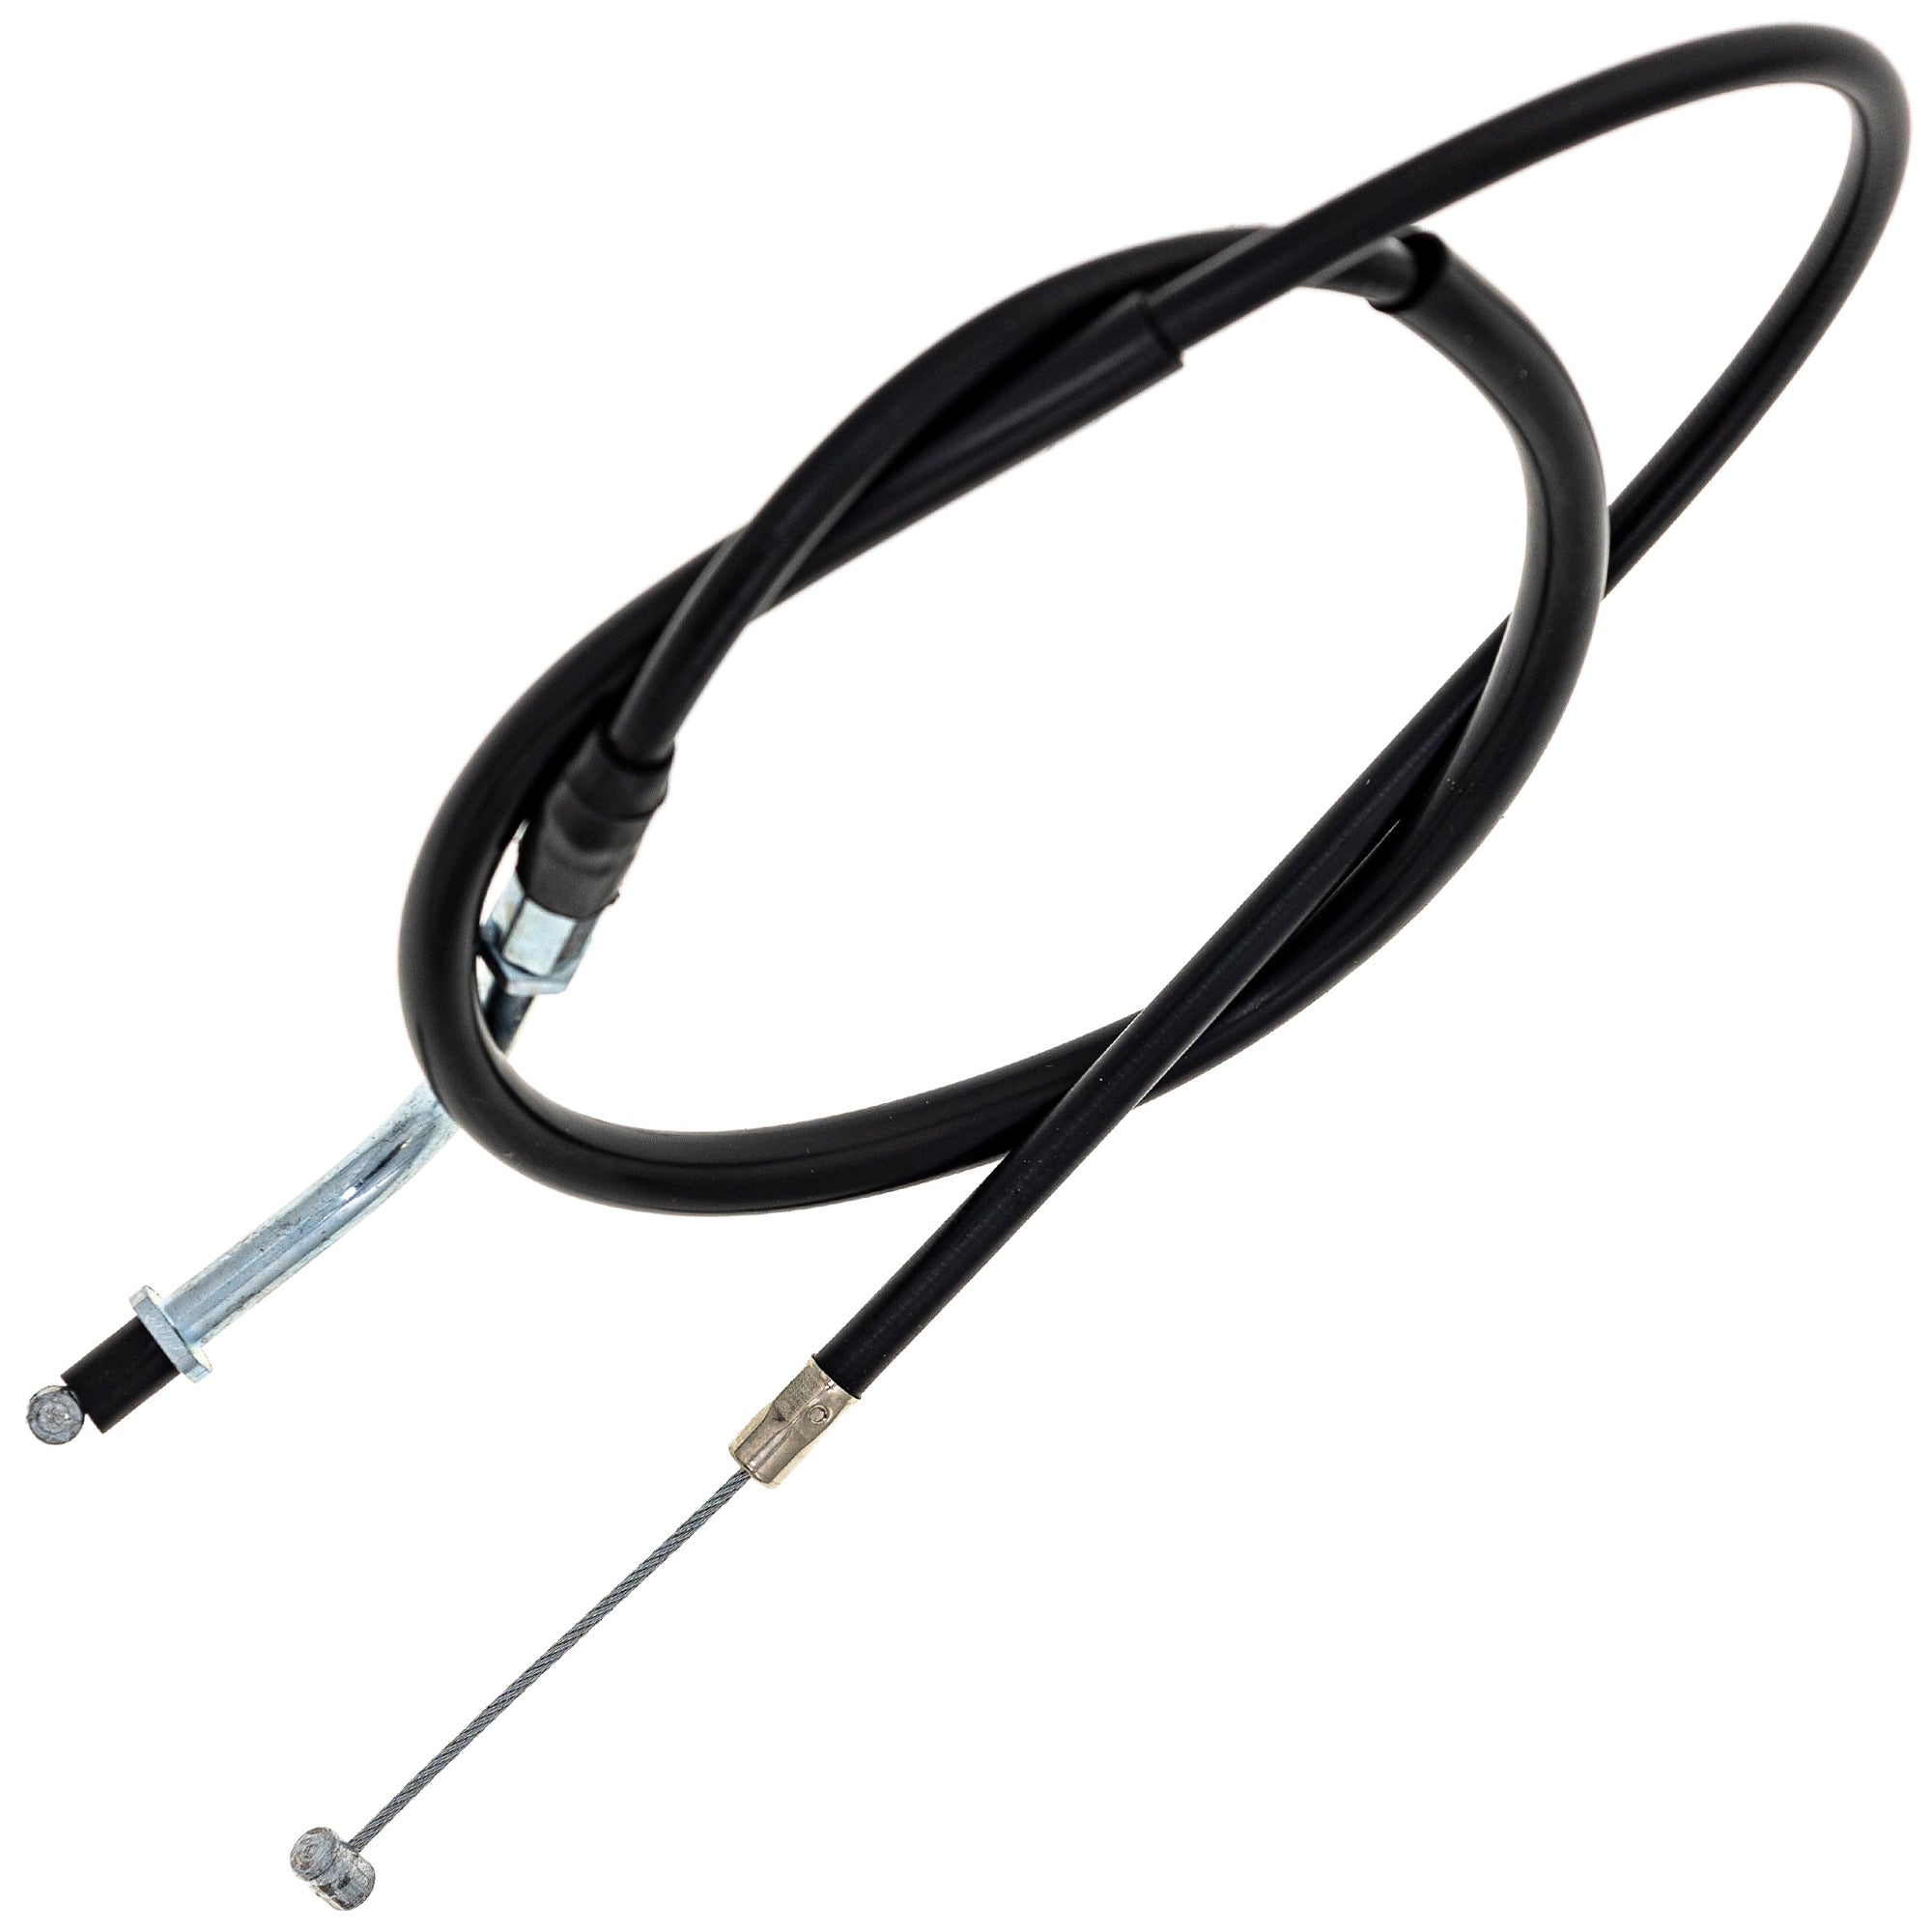 Throttle Cable for Yamaha FZR400 Virago 750 XV750 XV750M